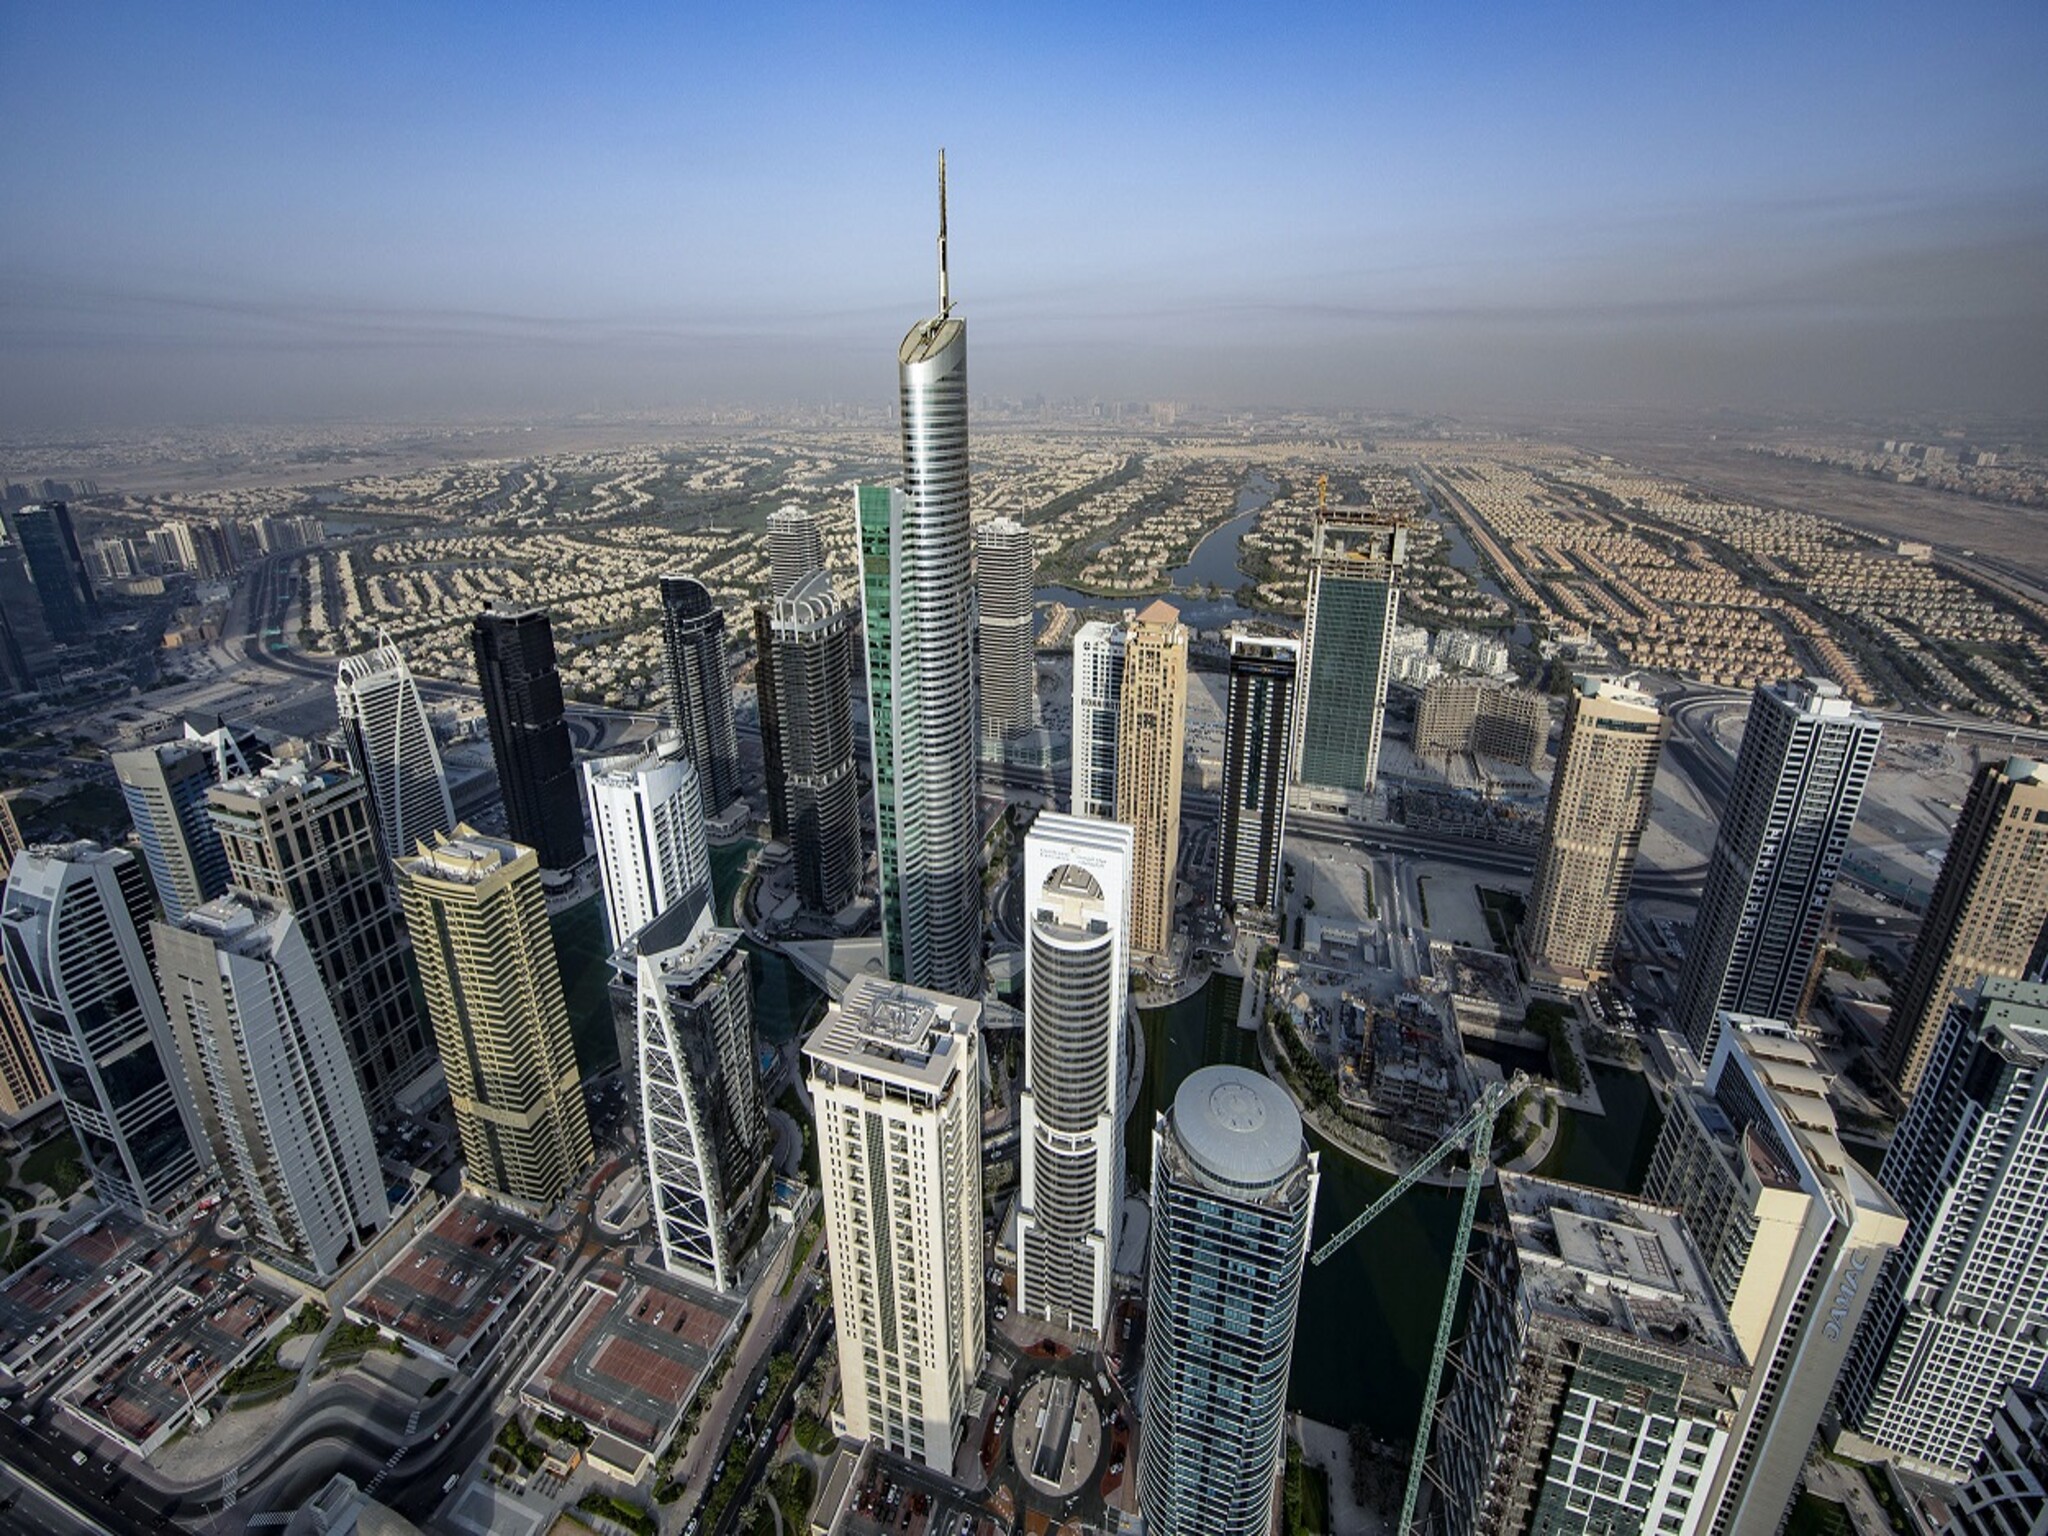 إطلاق برنامج "دبي للوسيط العقاري" لرفع نسبة الوسطاء المواطنين إلى 15% في 3 أعوام